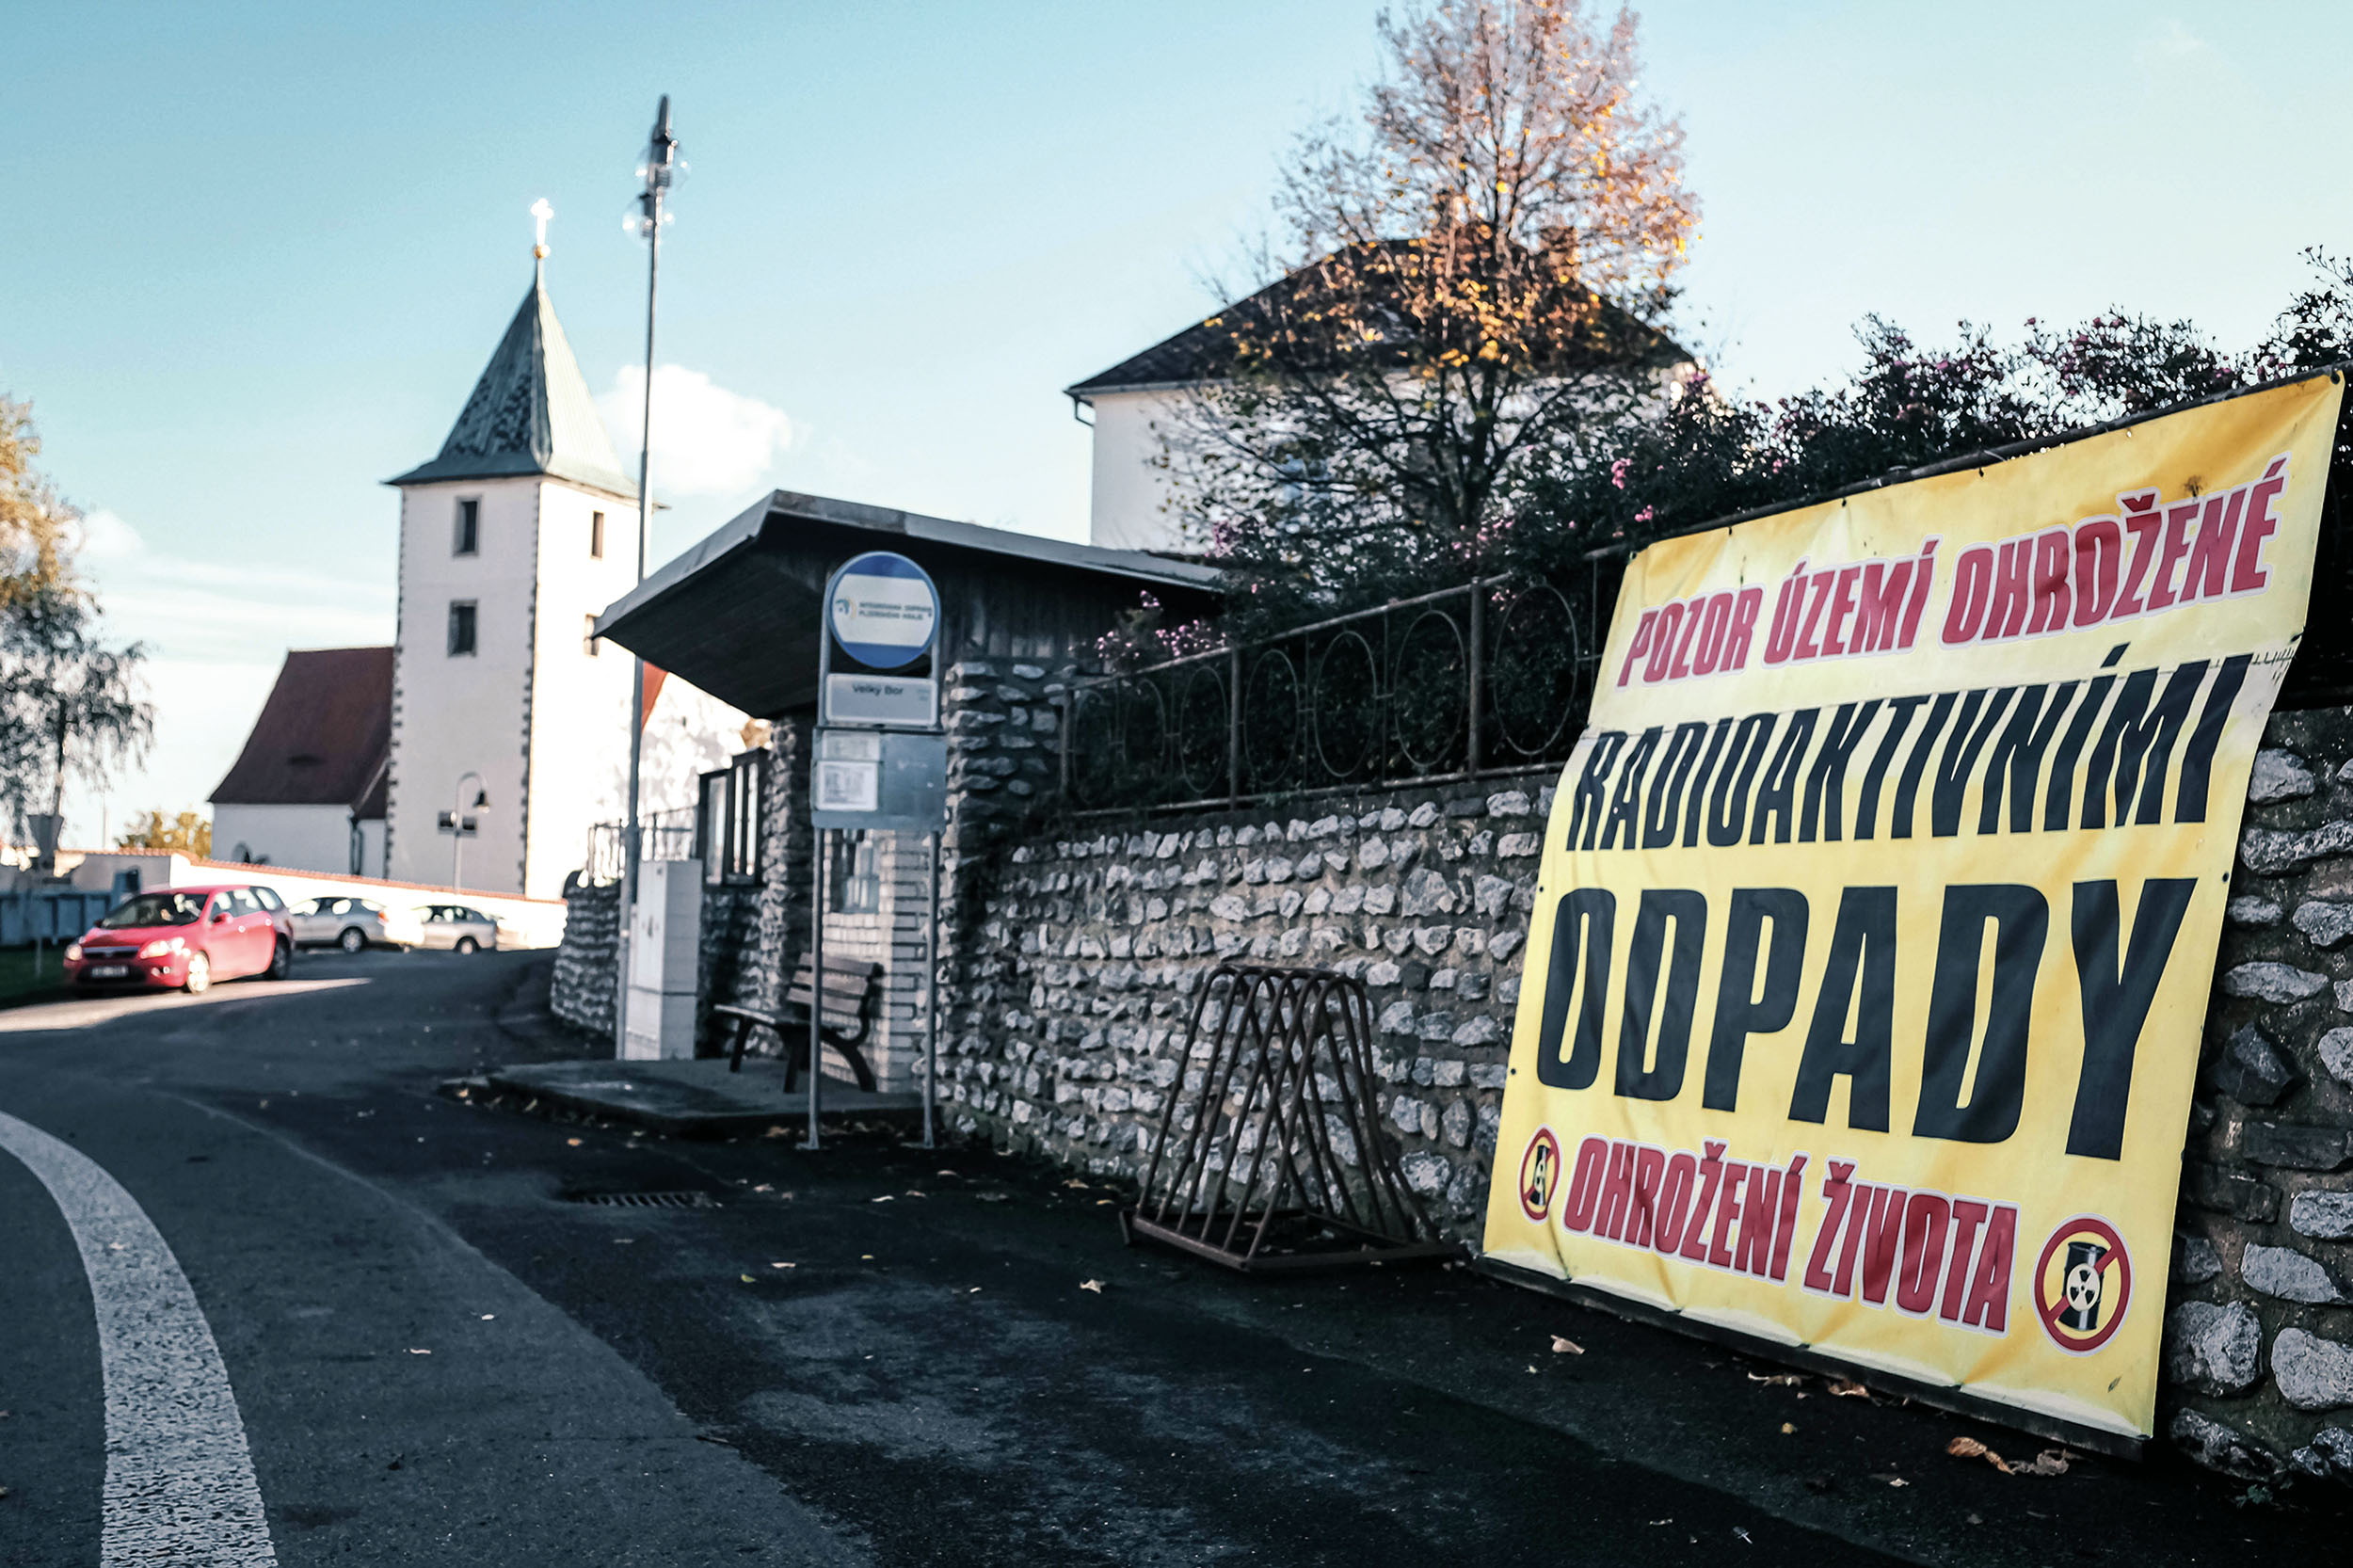 Několik domů ve vesničce Velký Bor, kde žije něco přes 500 obyvatel, je oblepeno plakáty s hesly proti úložišti.